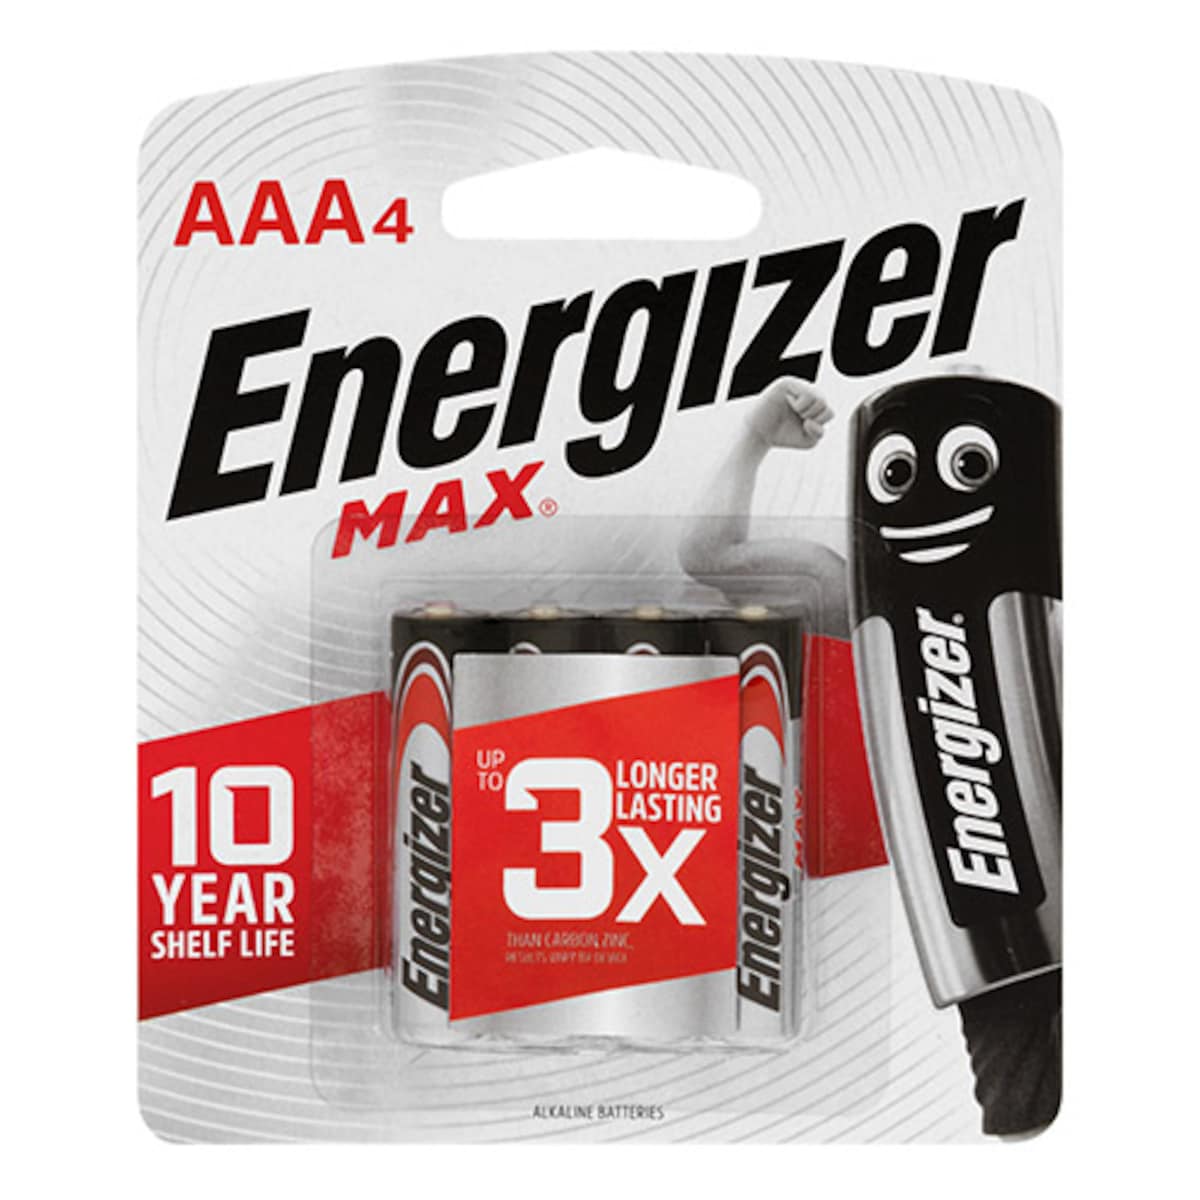 ENERGIZER AAA 4+2-E92 MAX